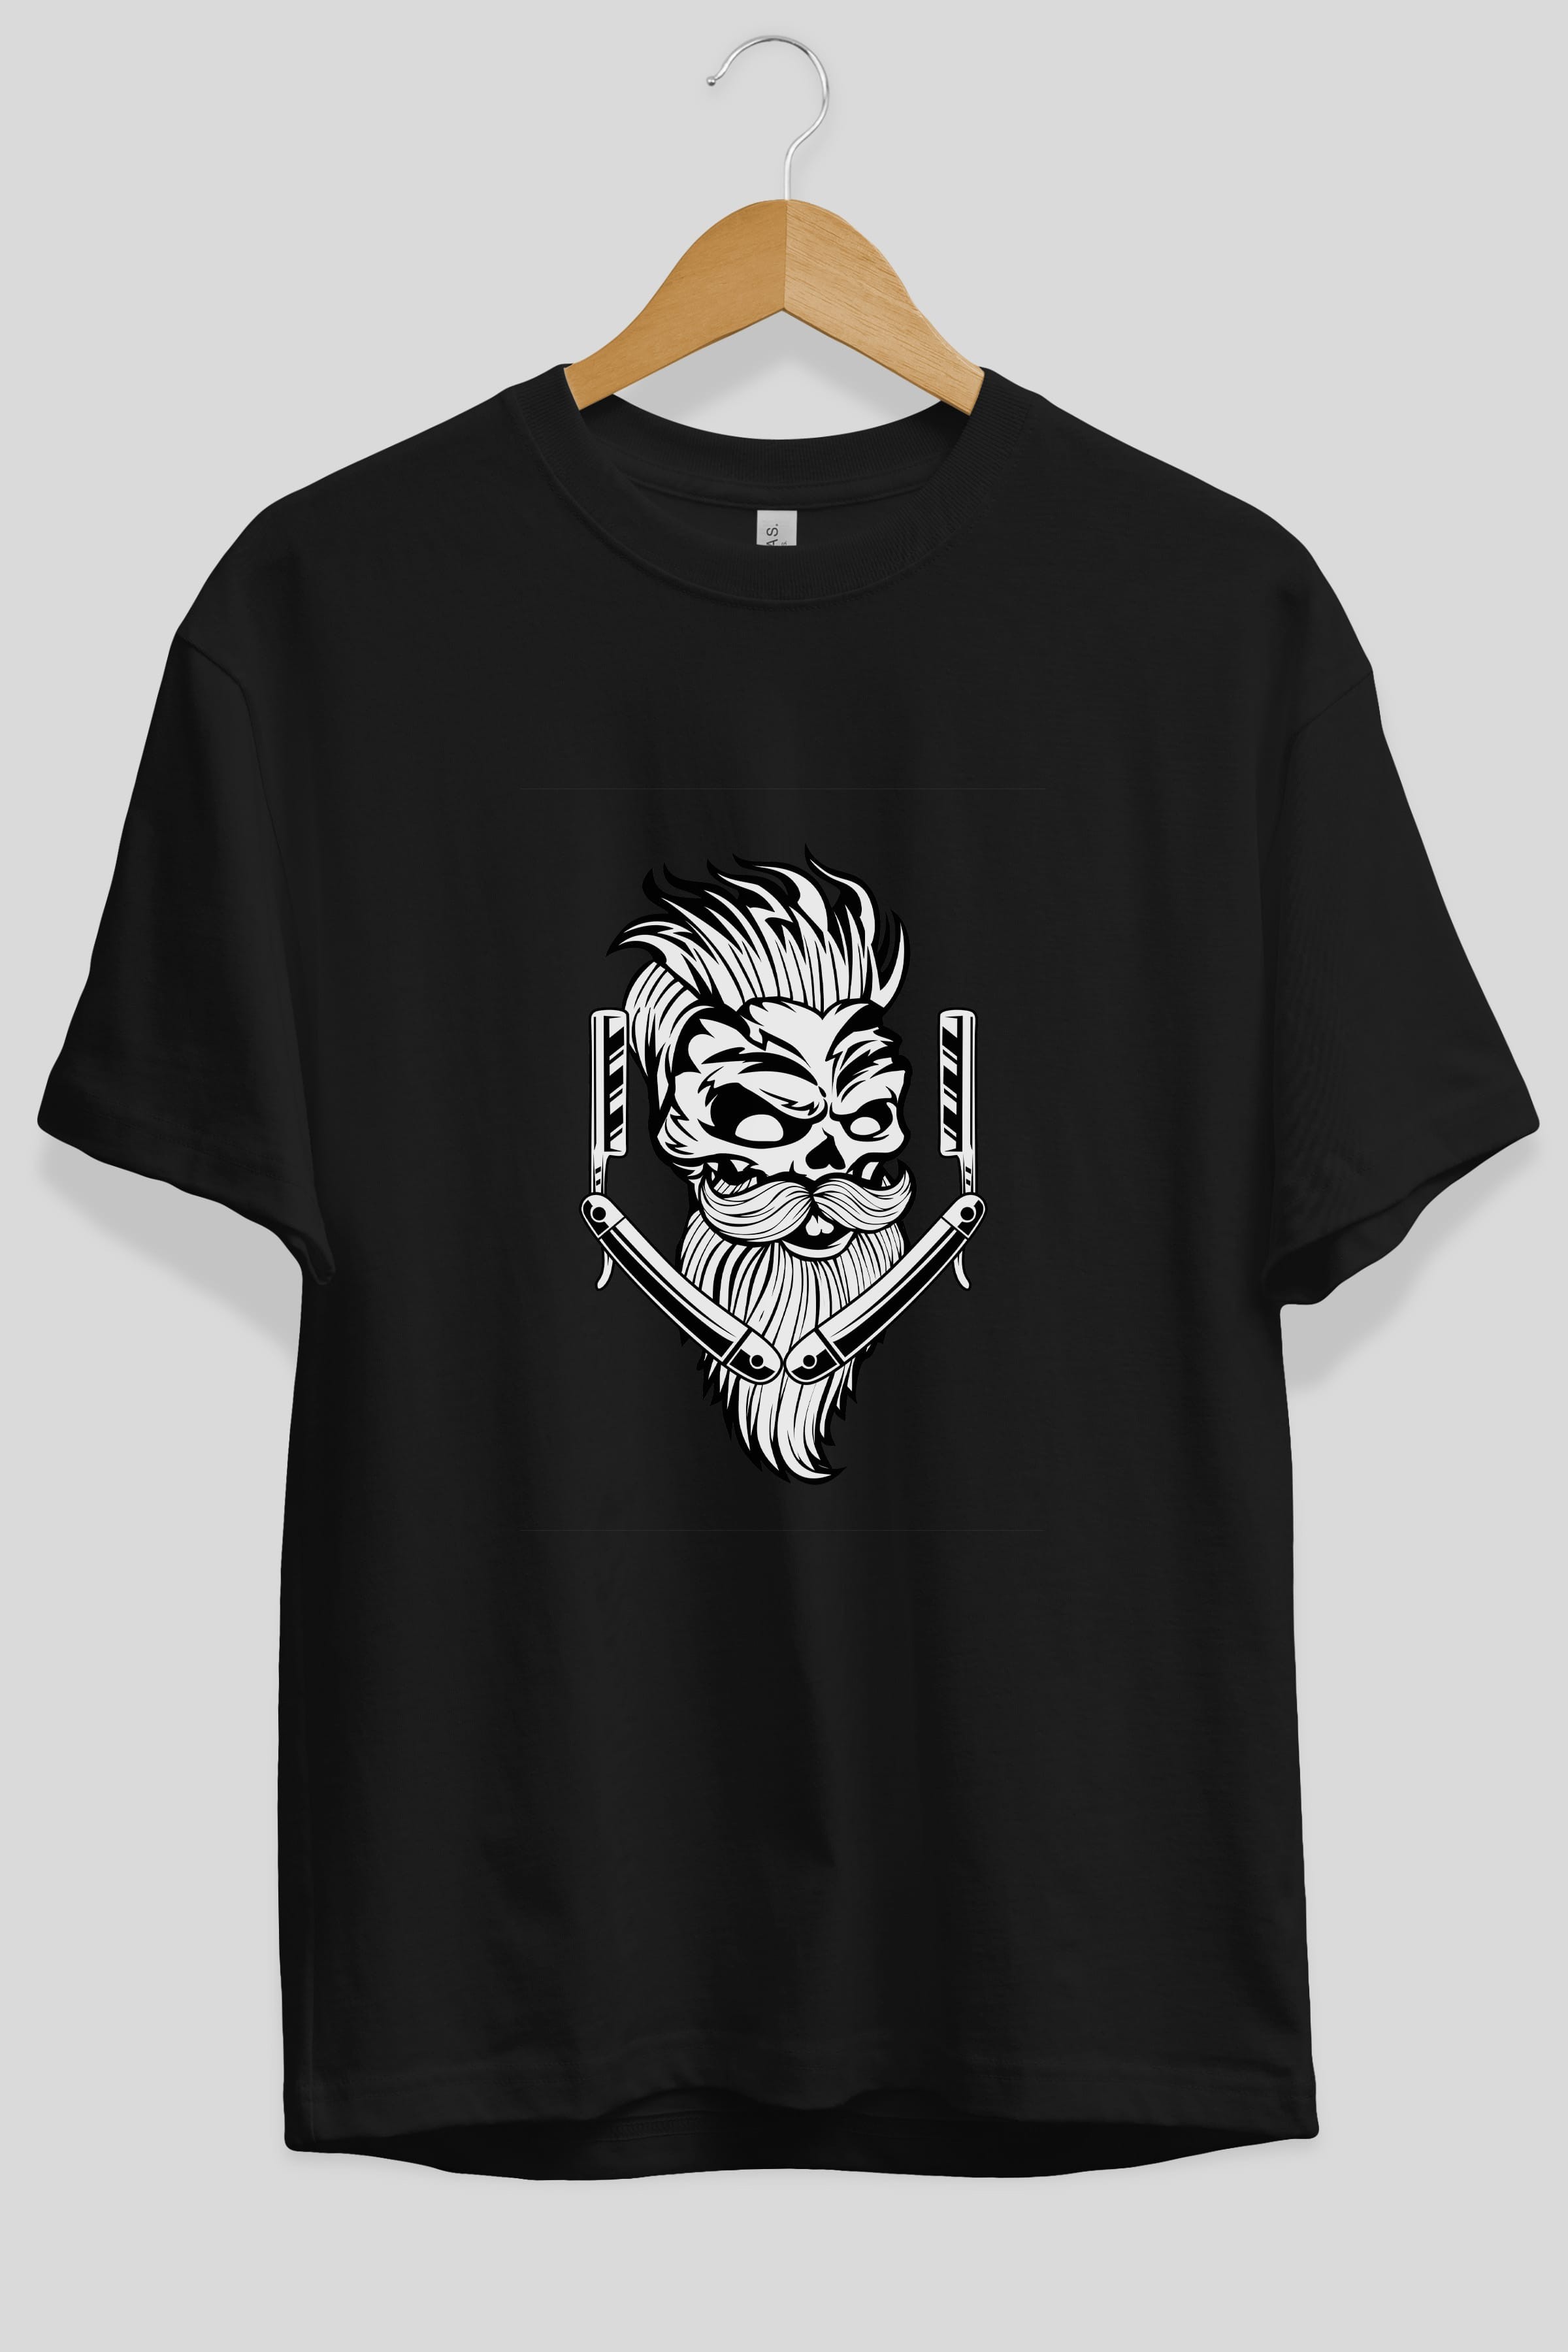 Skull Beard Ön Baskılı Oversize t-shirt Erkek Kadın Unisex %100 Pamuk tişort